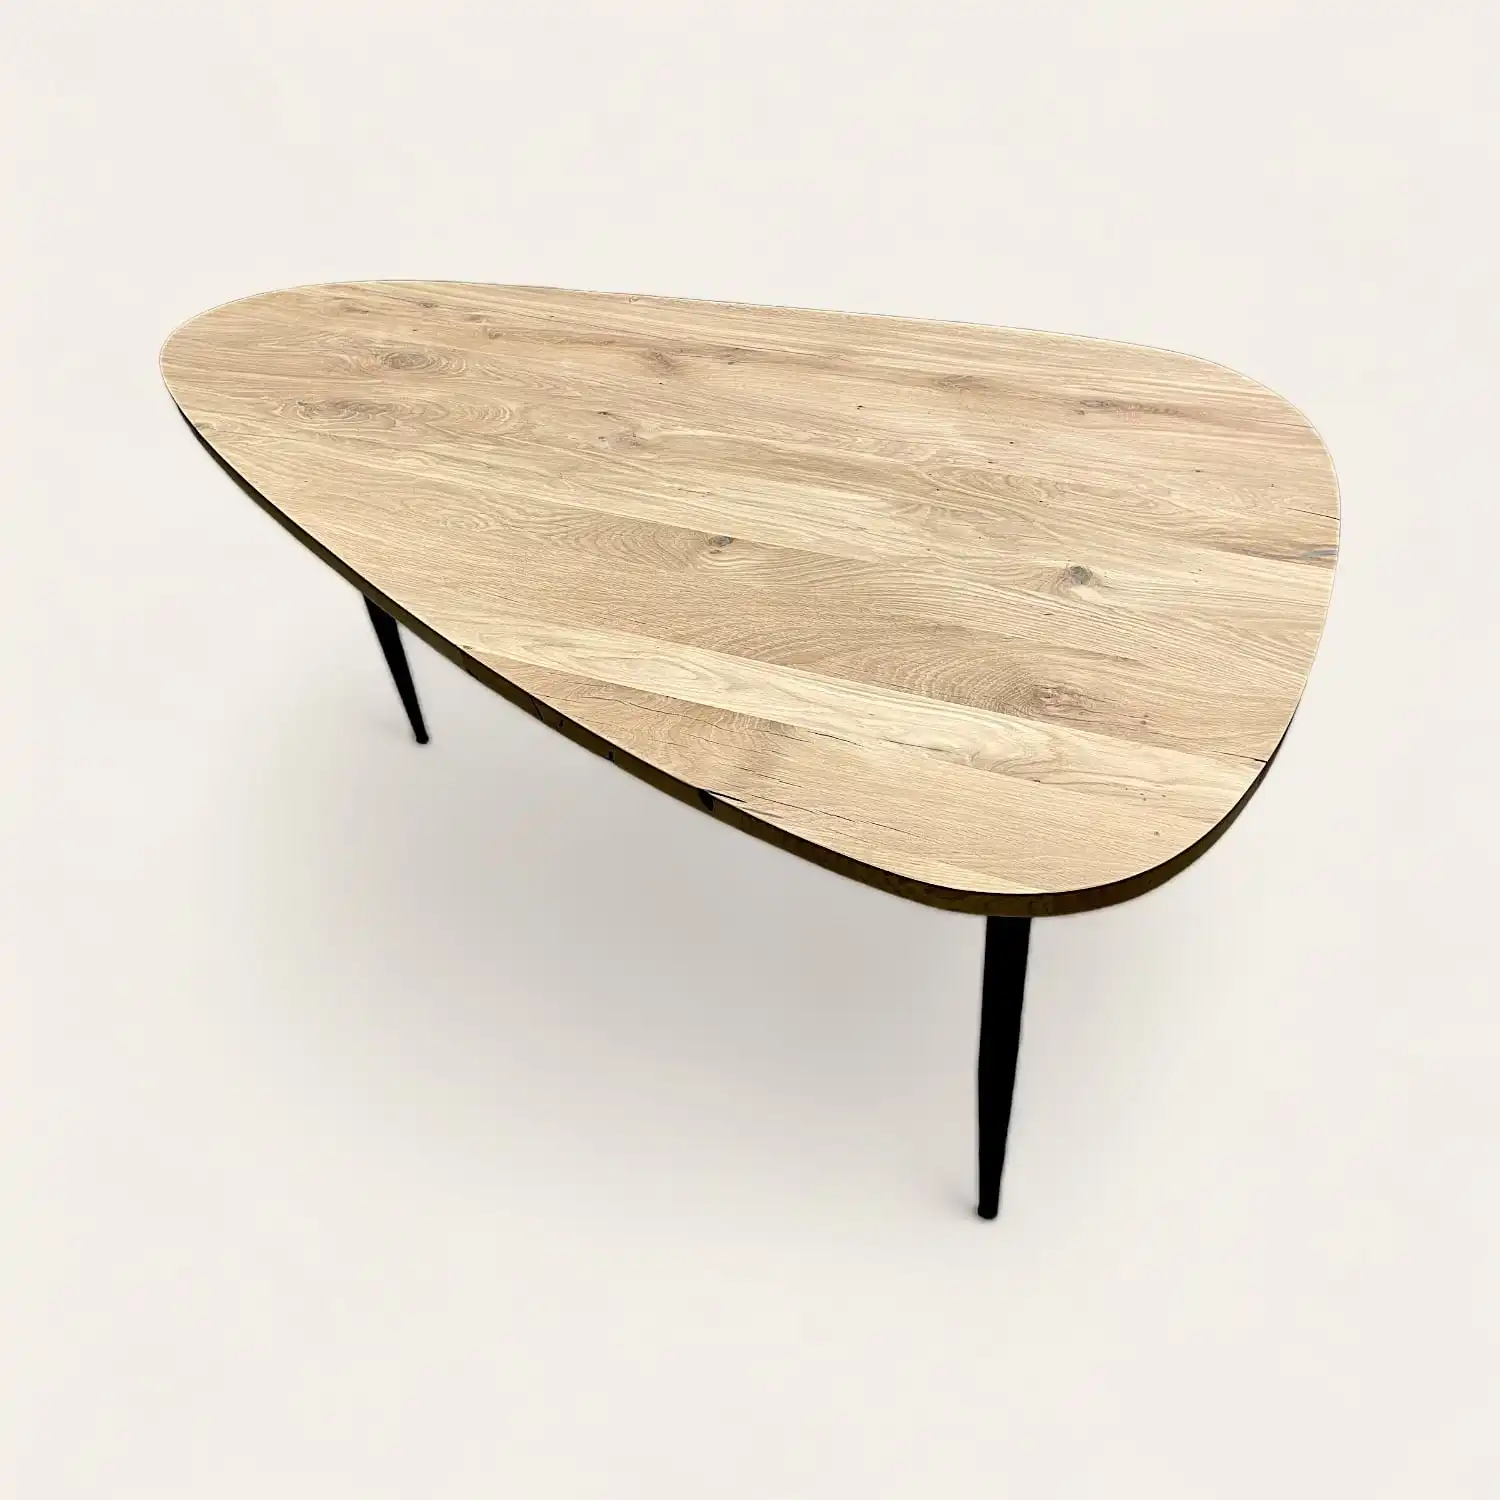  Une table basse avec un plateau en bois recyclé et des pieds noirs. 